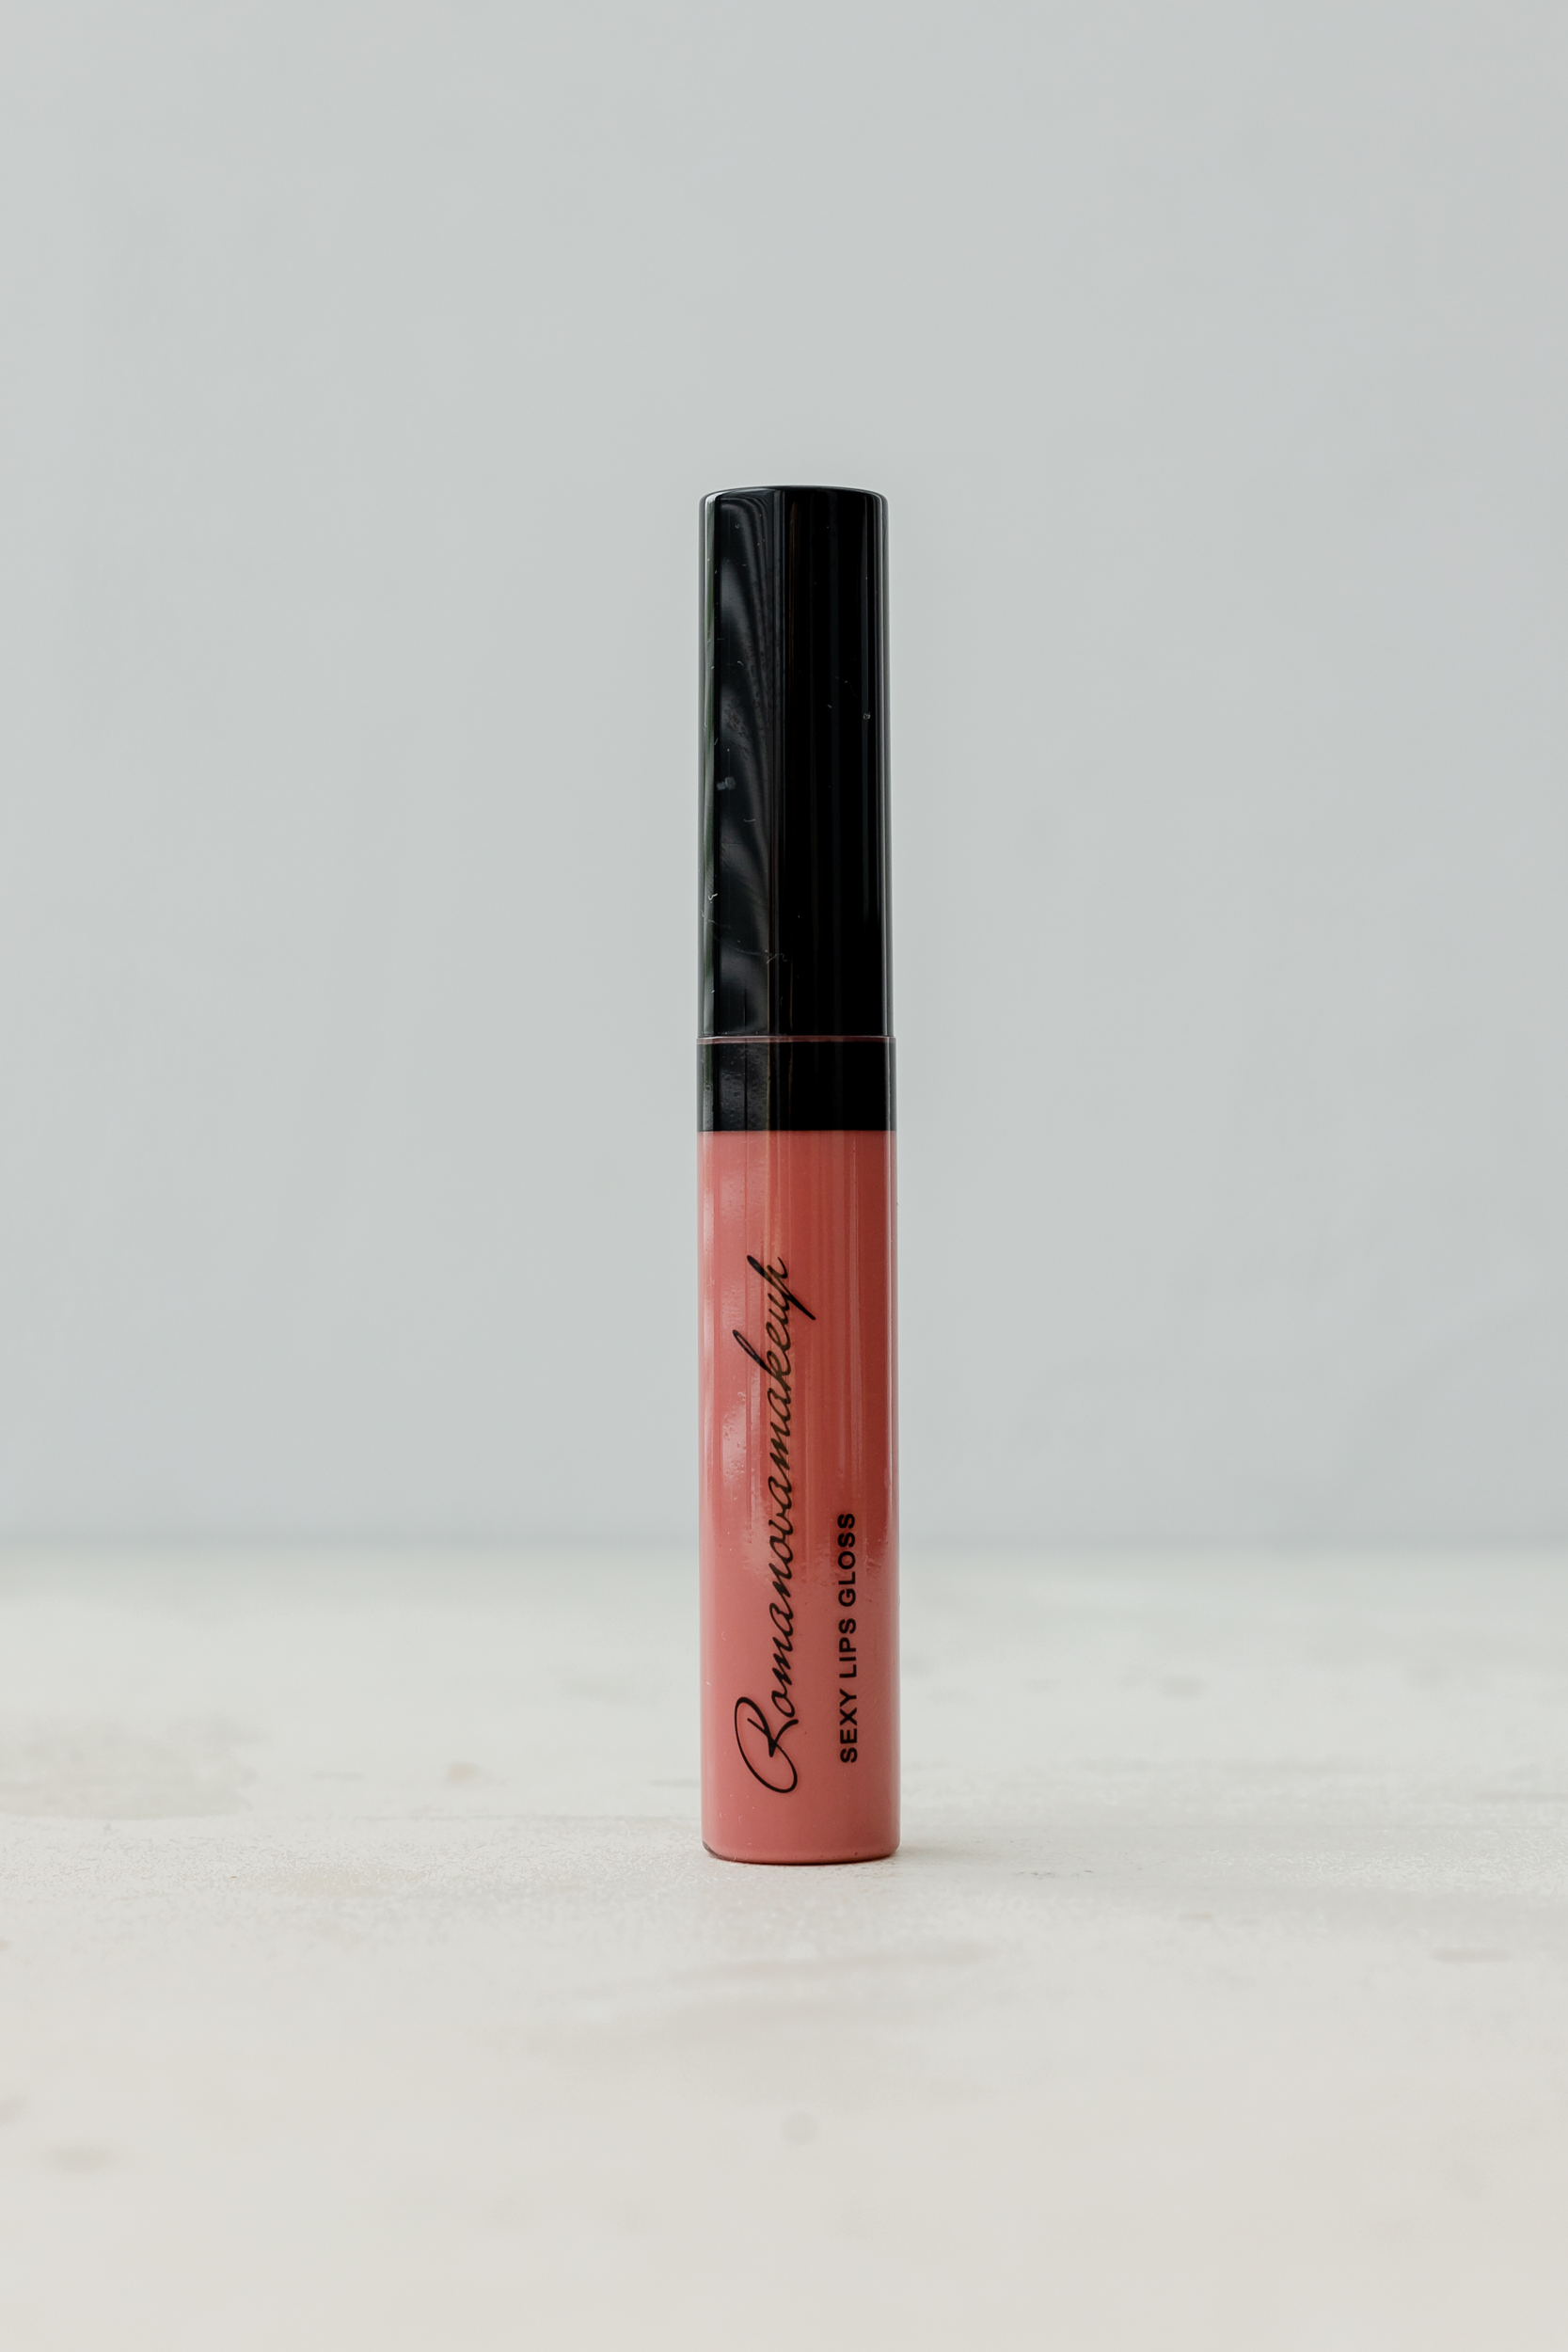 Роскошный блеск для губ, который и правда секси Romanovamakeup Sexy Lips Gloss DREAMY 8.5ml